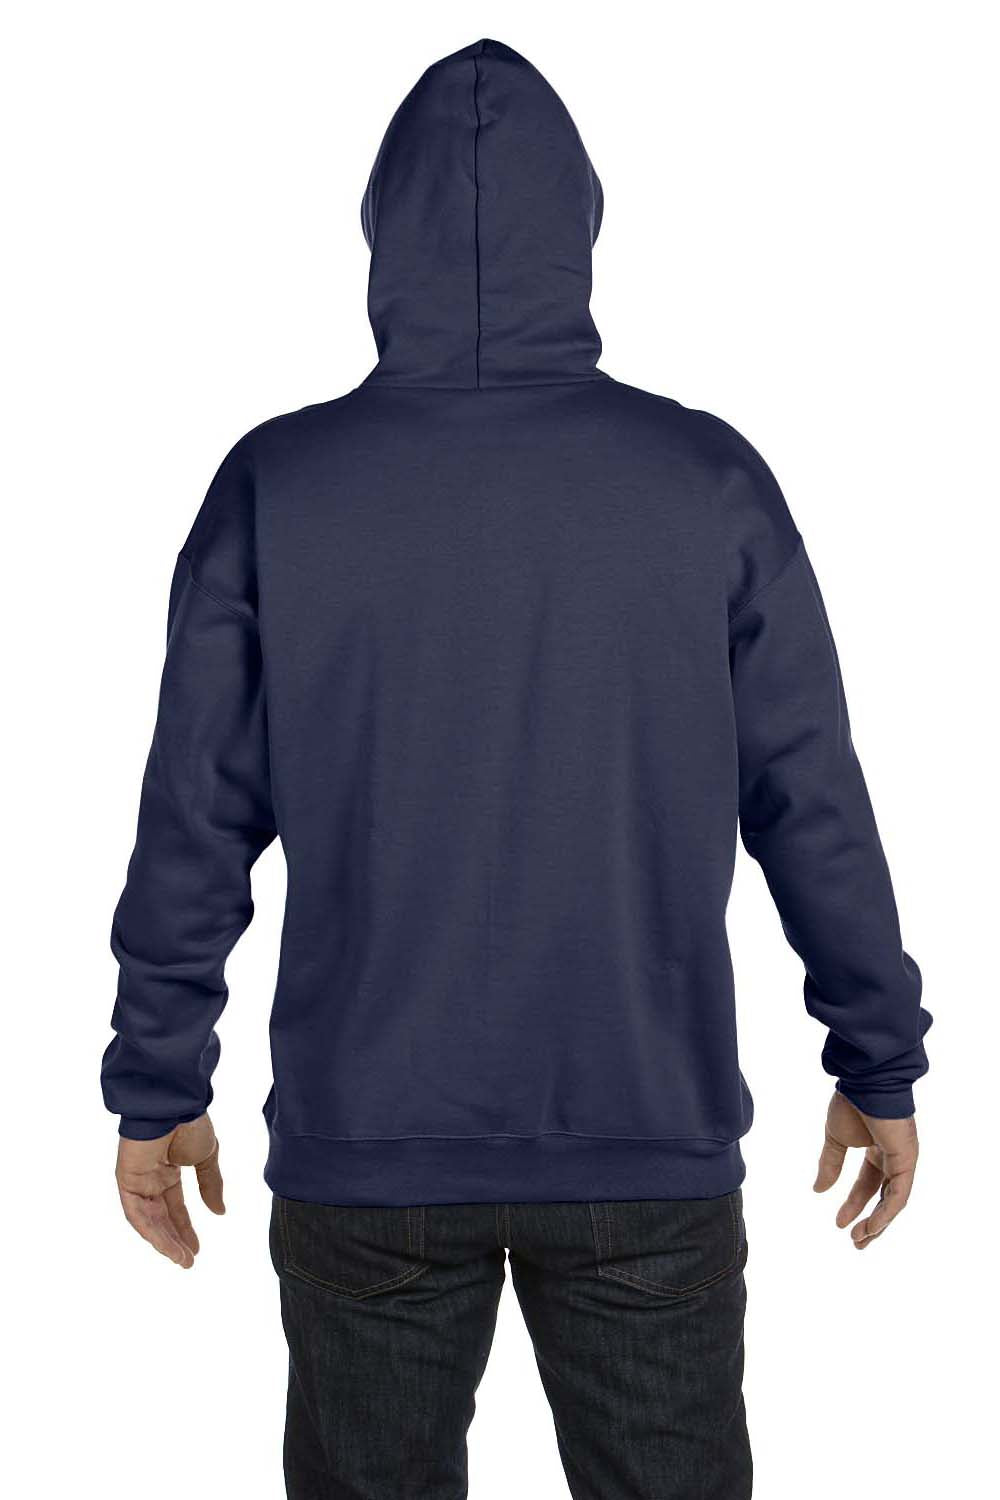 Hanes F170 Mens Ultimate Cotton PrintPro XP Hooded Sweatshirt Hoodie Navy Blue Back